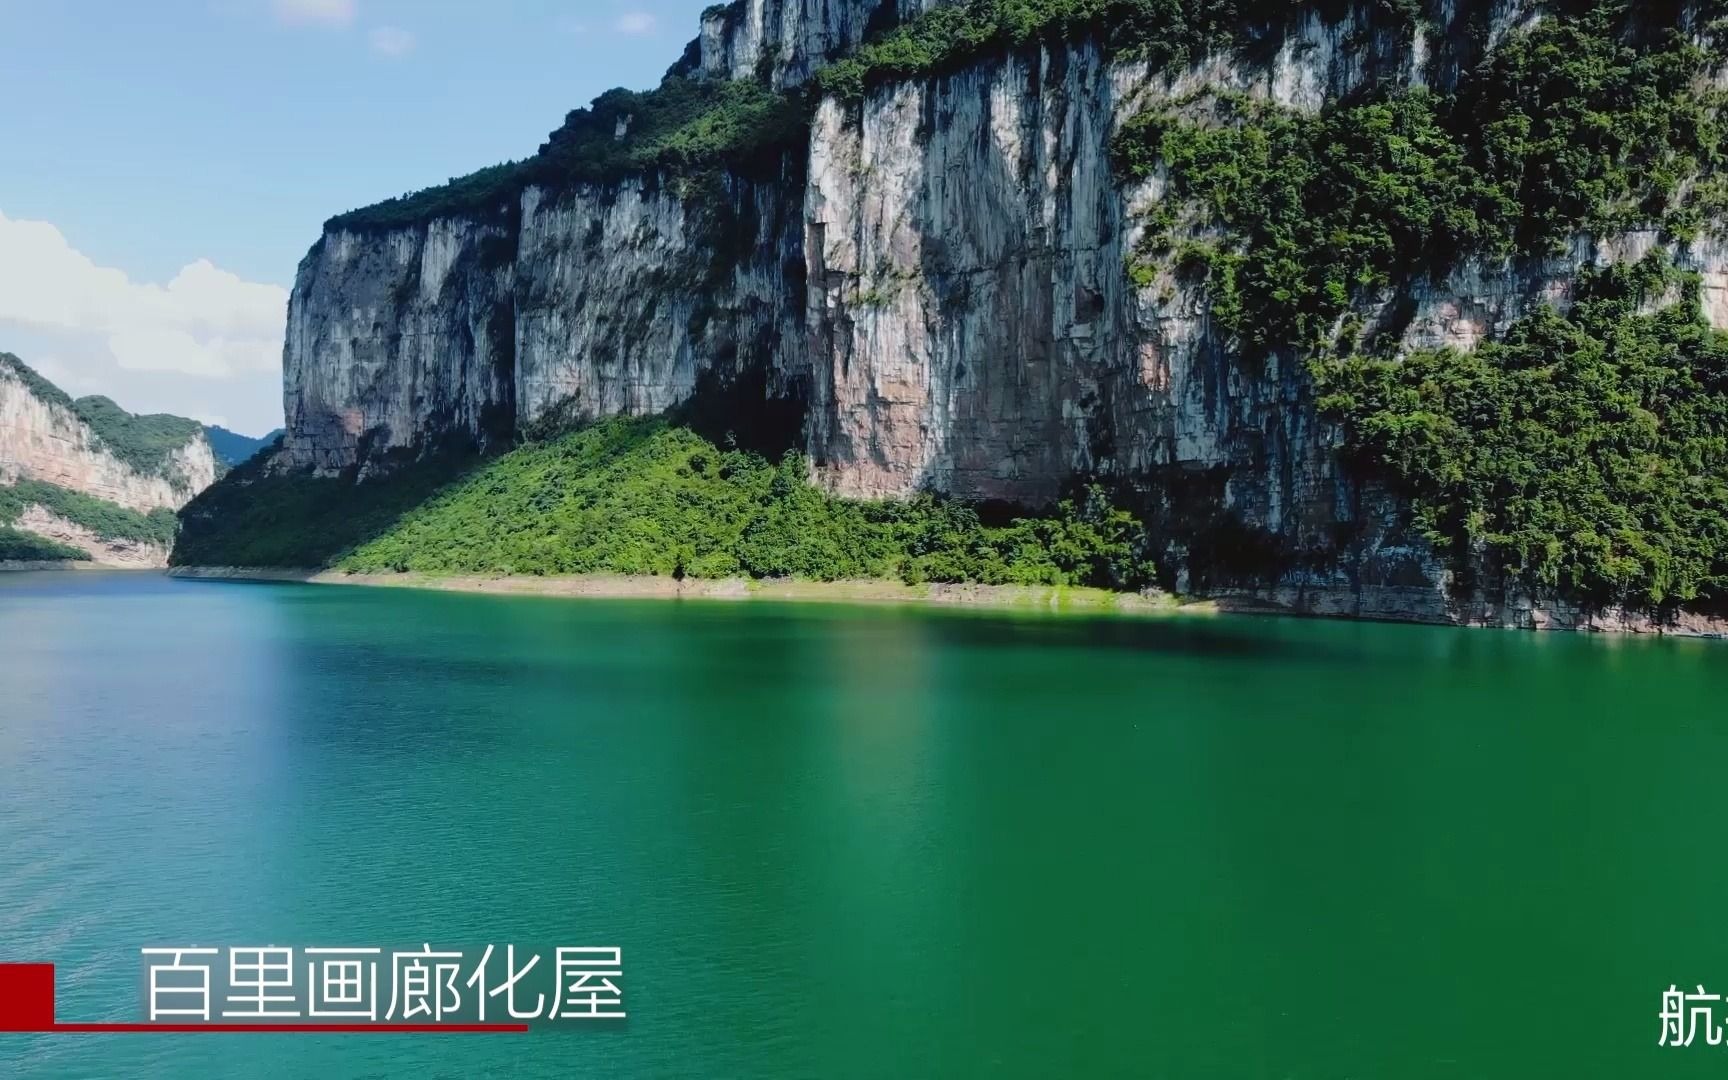 乌江源百里画廊化屋风景区，位于贵州省黔西市，这里湖水清澄，两岸峡谷 